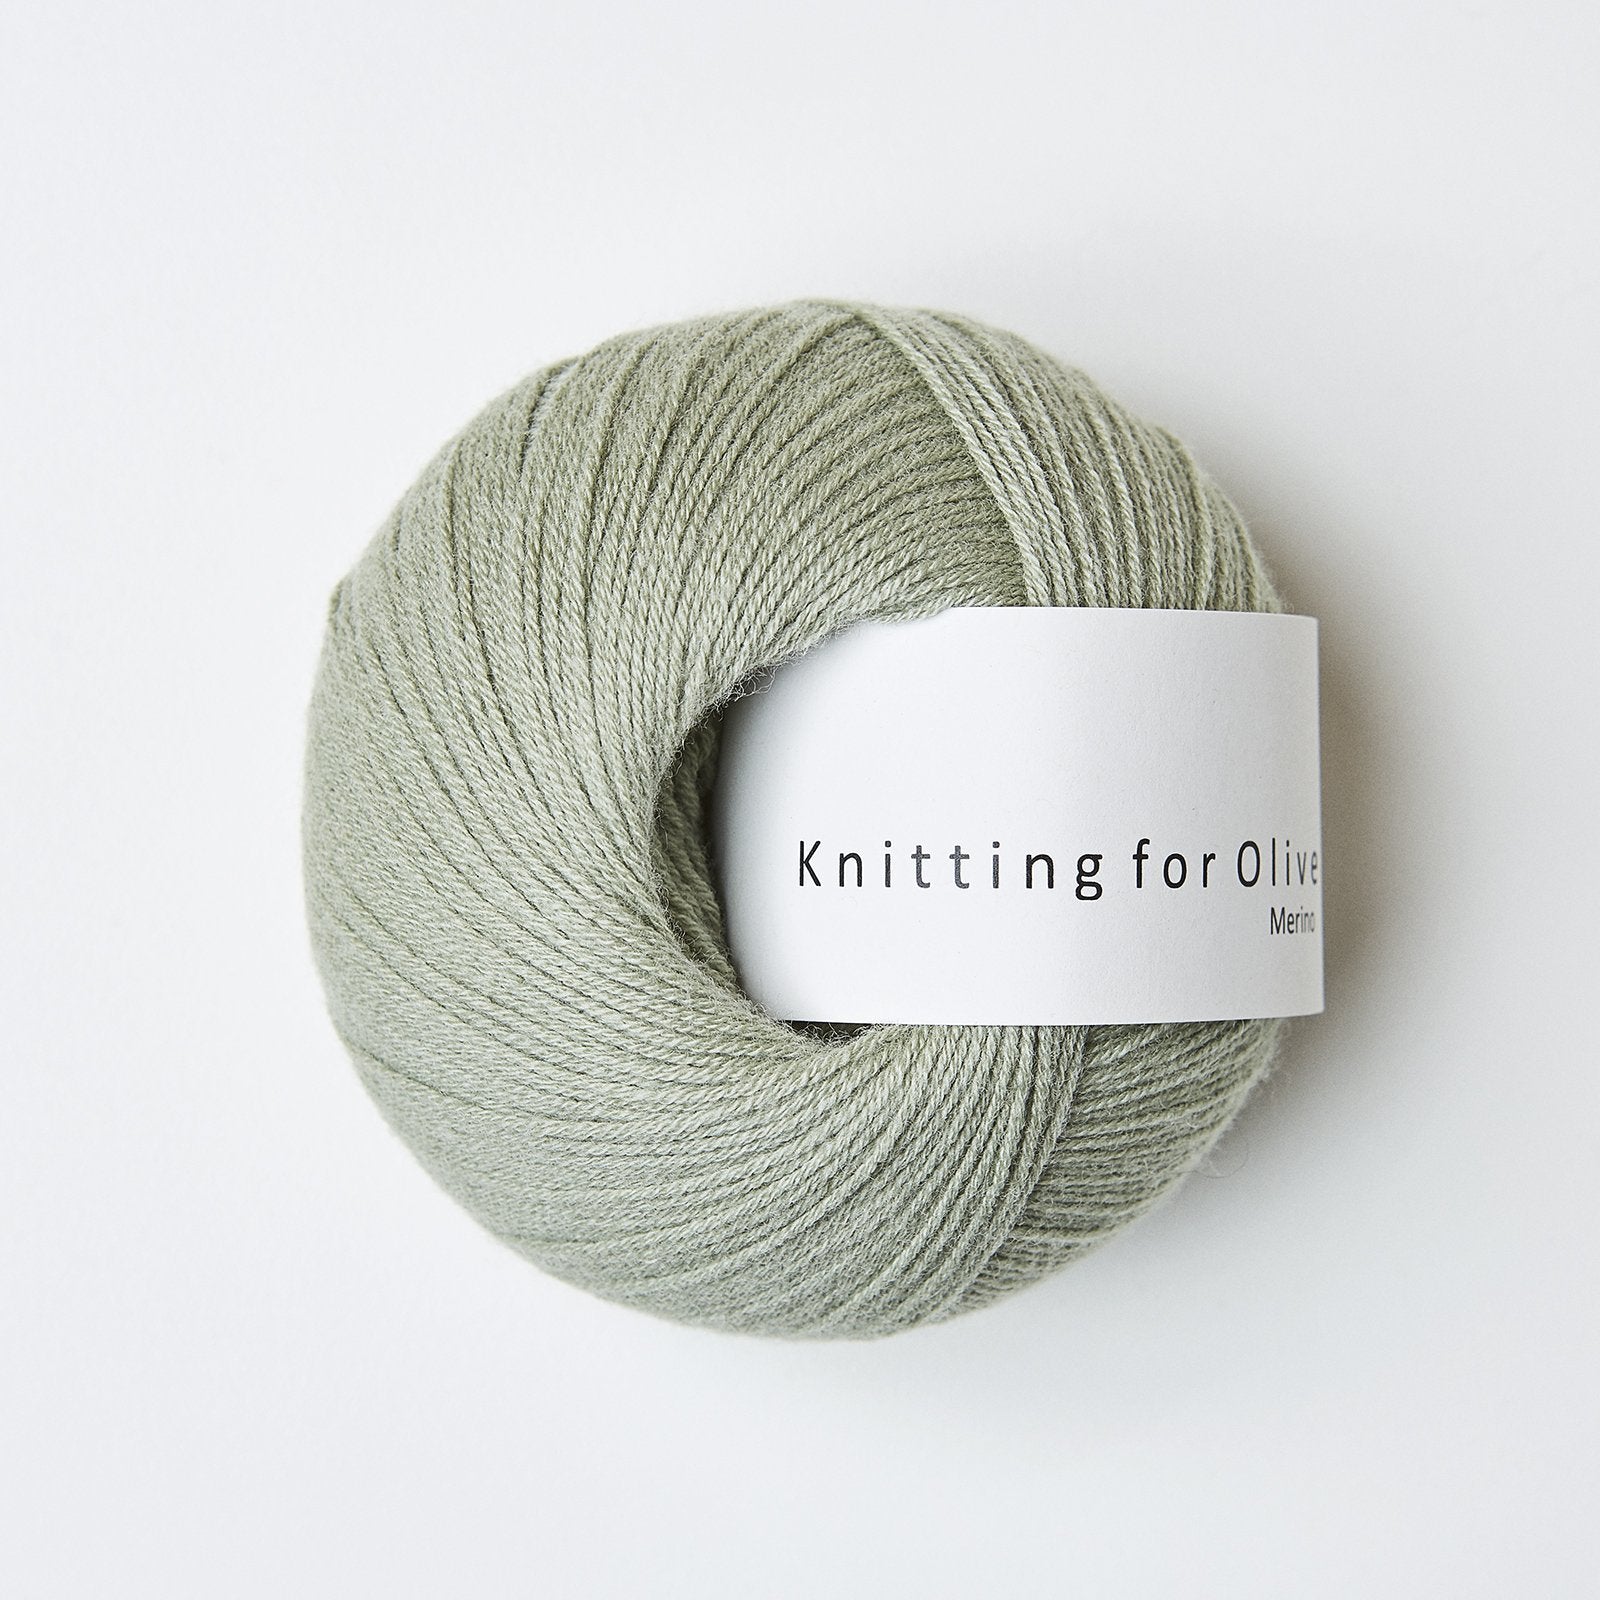 Knitting for Olive Merino Støvet Artiskok garn